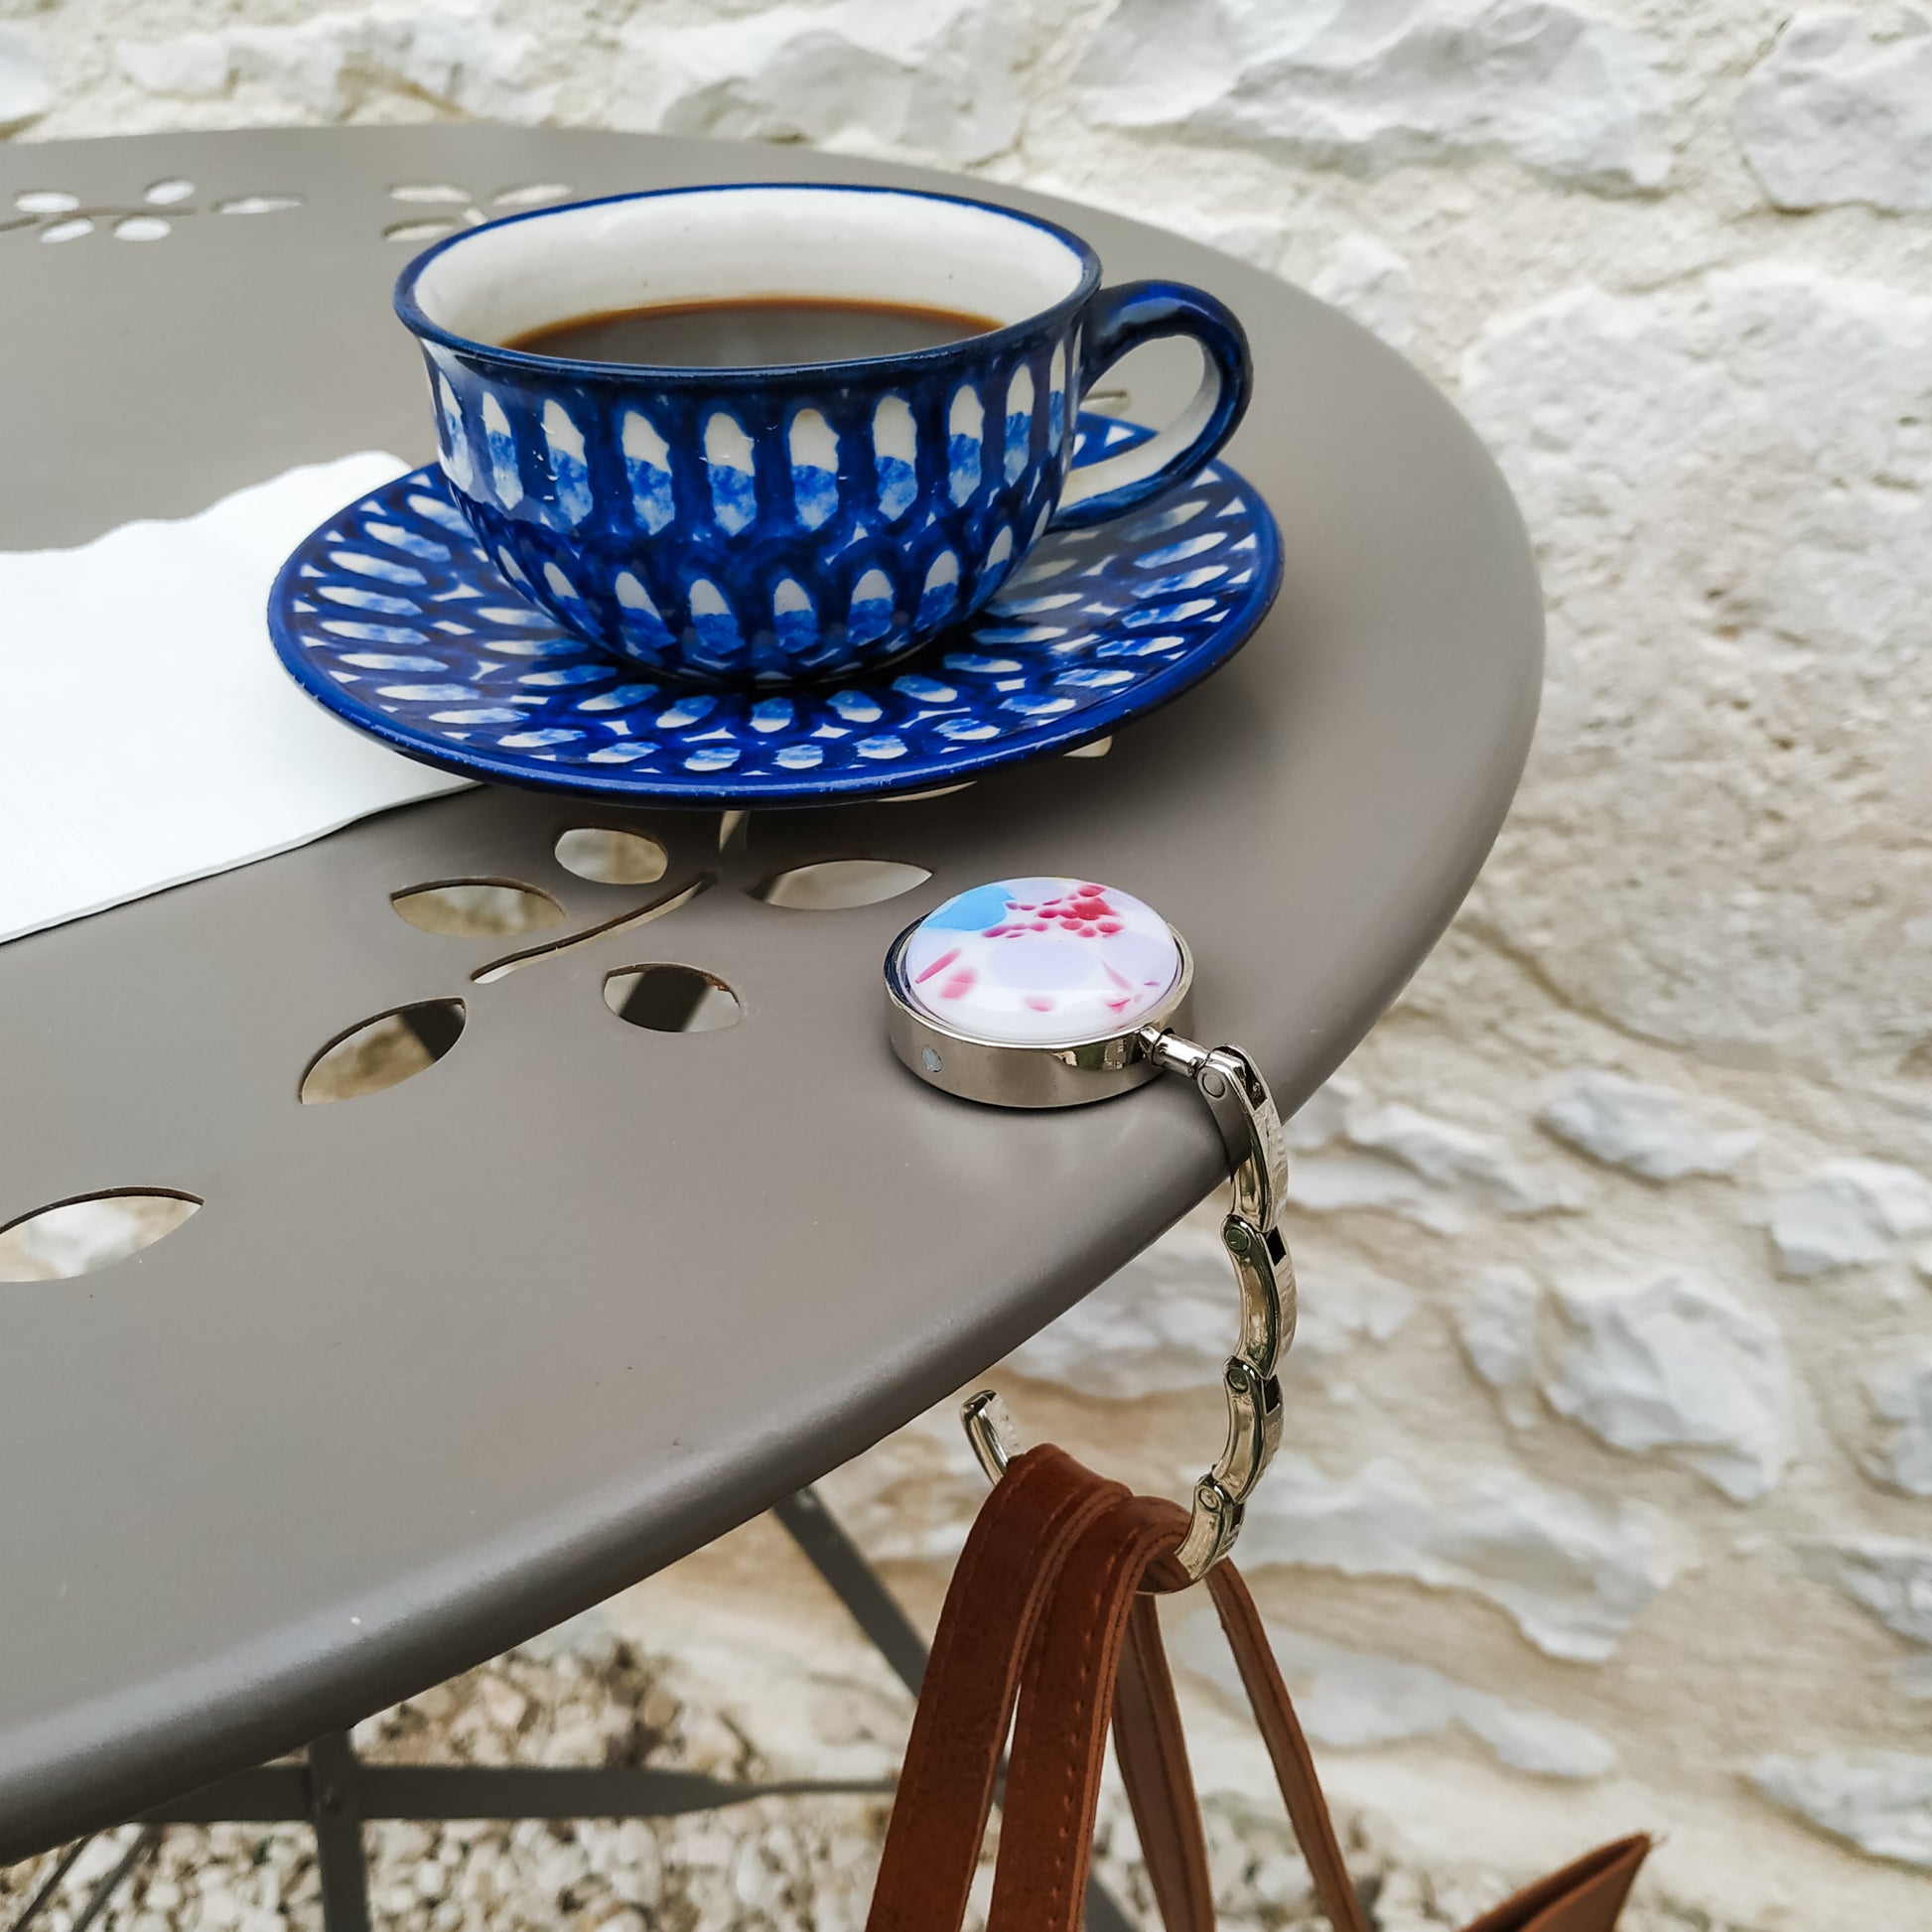 Coffee cup and saucer on bistro table with bag hanger and handbag